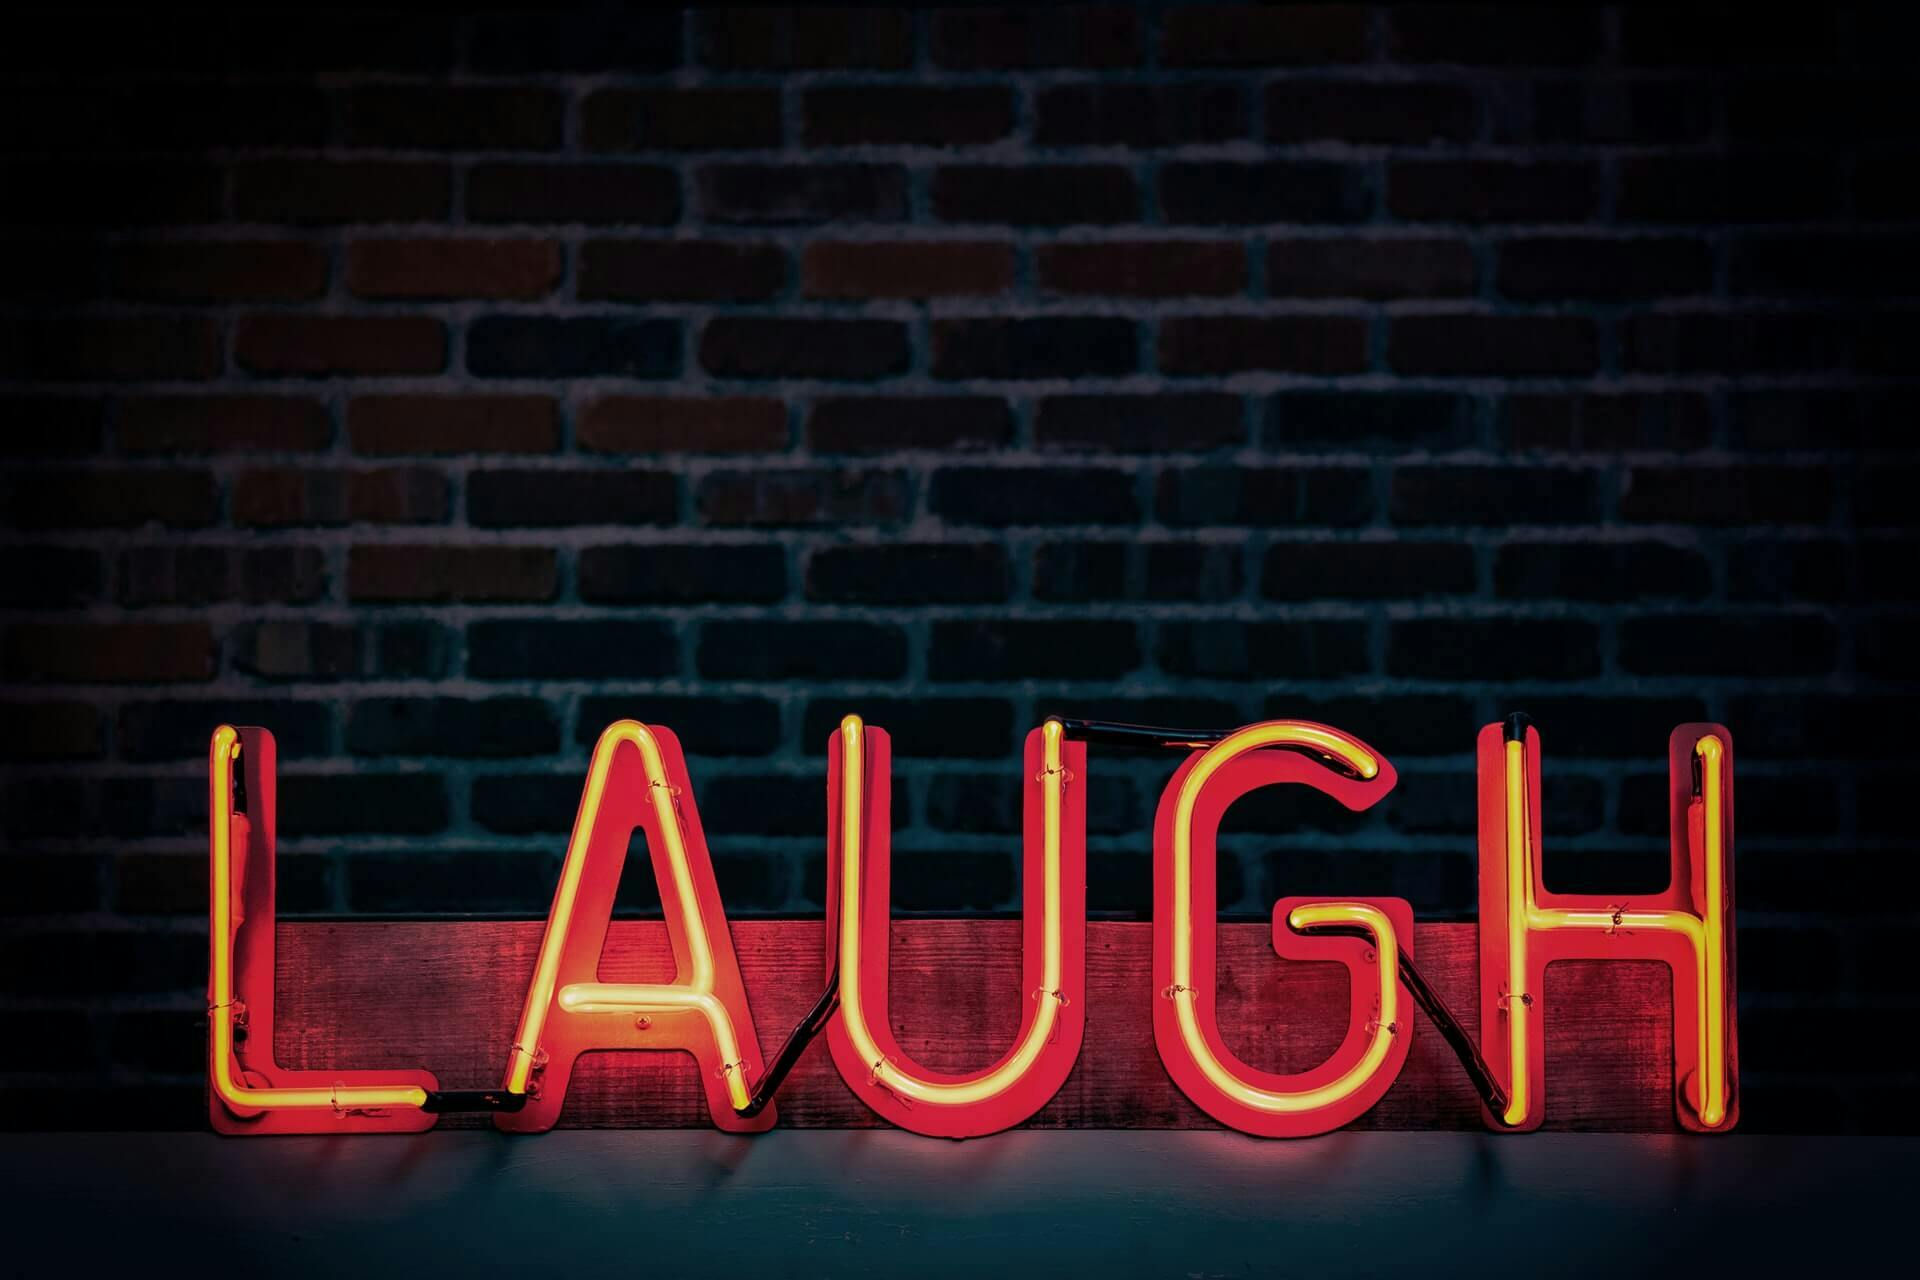 Escrita "laugh" em letra neon (risada em inglês)